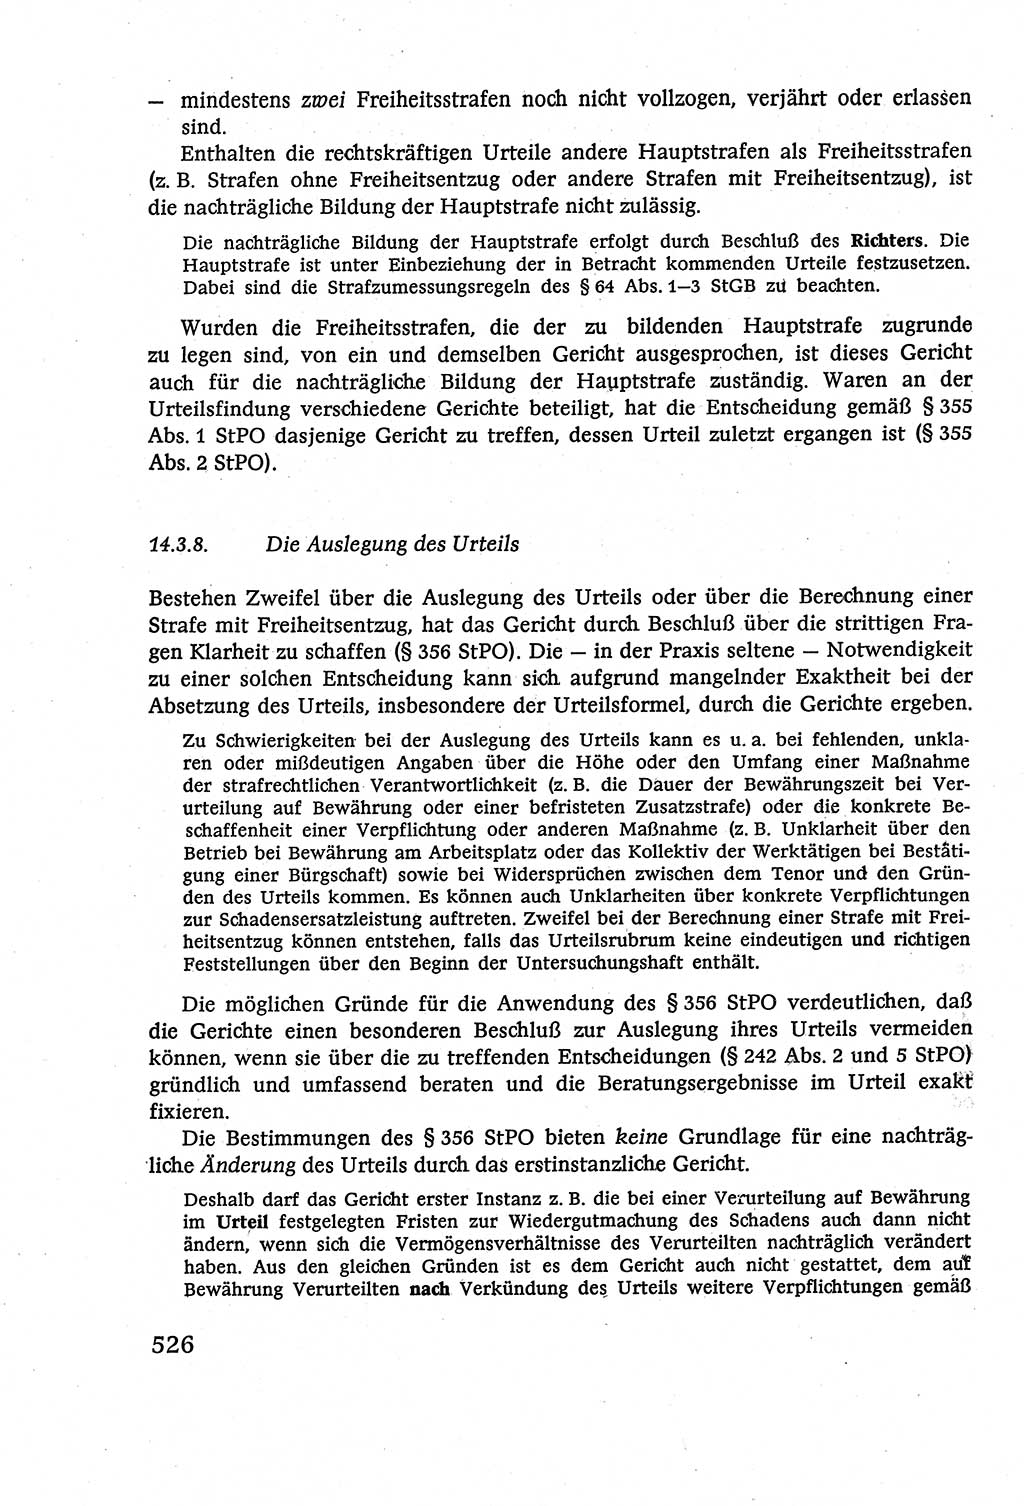 Strafverfahrensrecht [Deutsche Demokratische Republik (DDR)], Lehrbuch 1977, Seite 526 (Strafverf.-R. DDR Lb. 1977, S. 526)